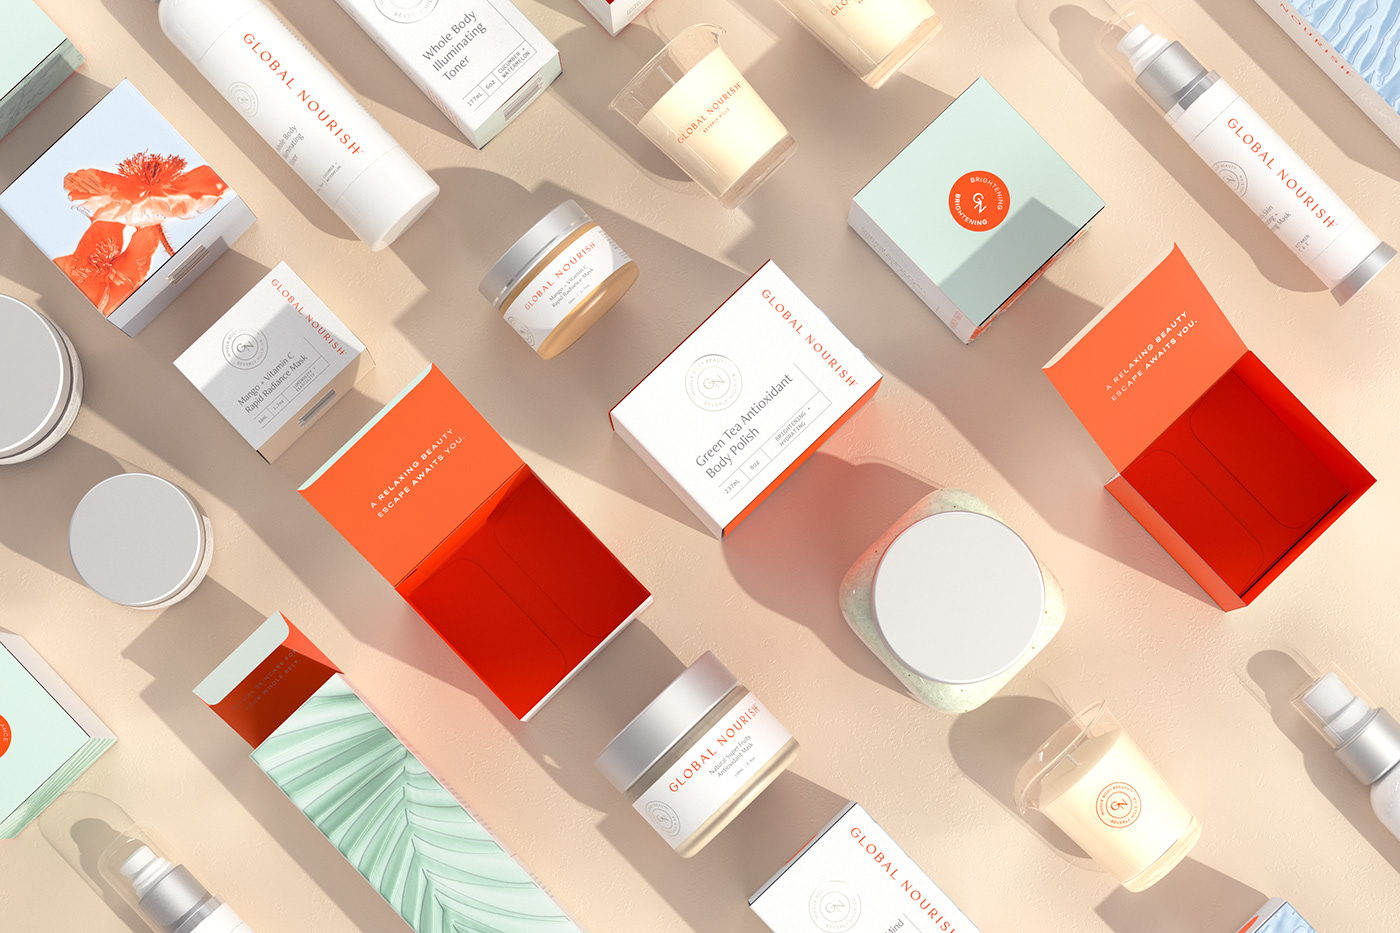 Woodlot Skincare Packaging Loves Mother Earth  Dieline - Design, Branding  & Packaging Inspiration